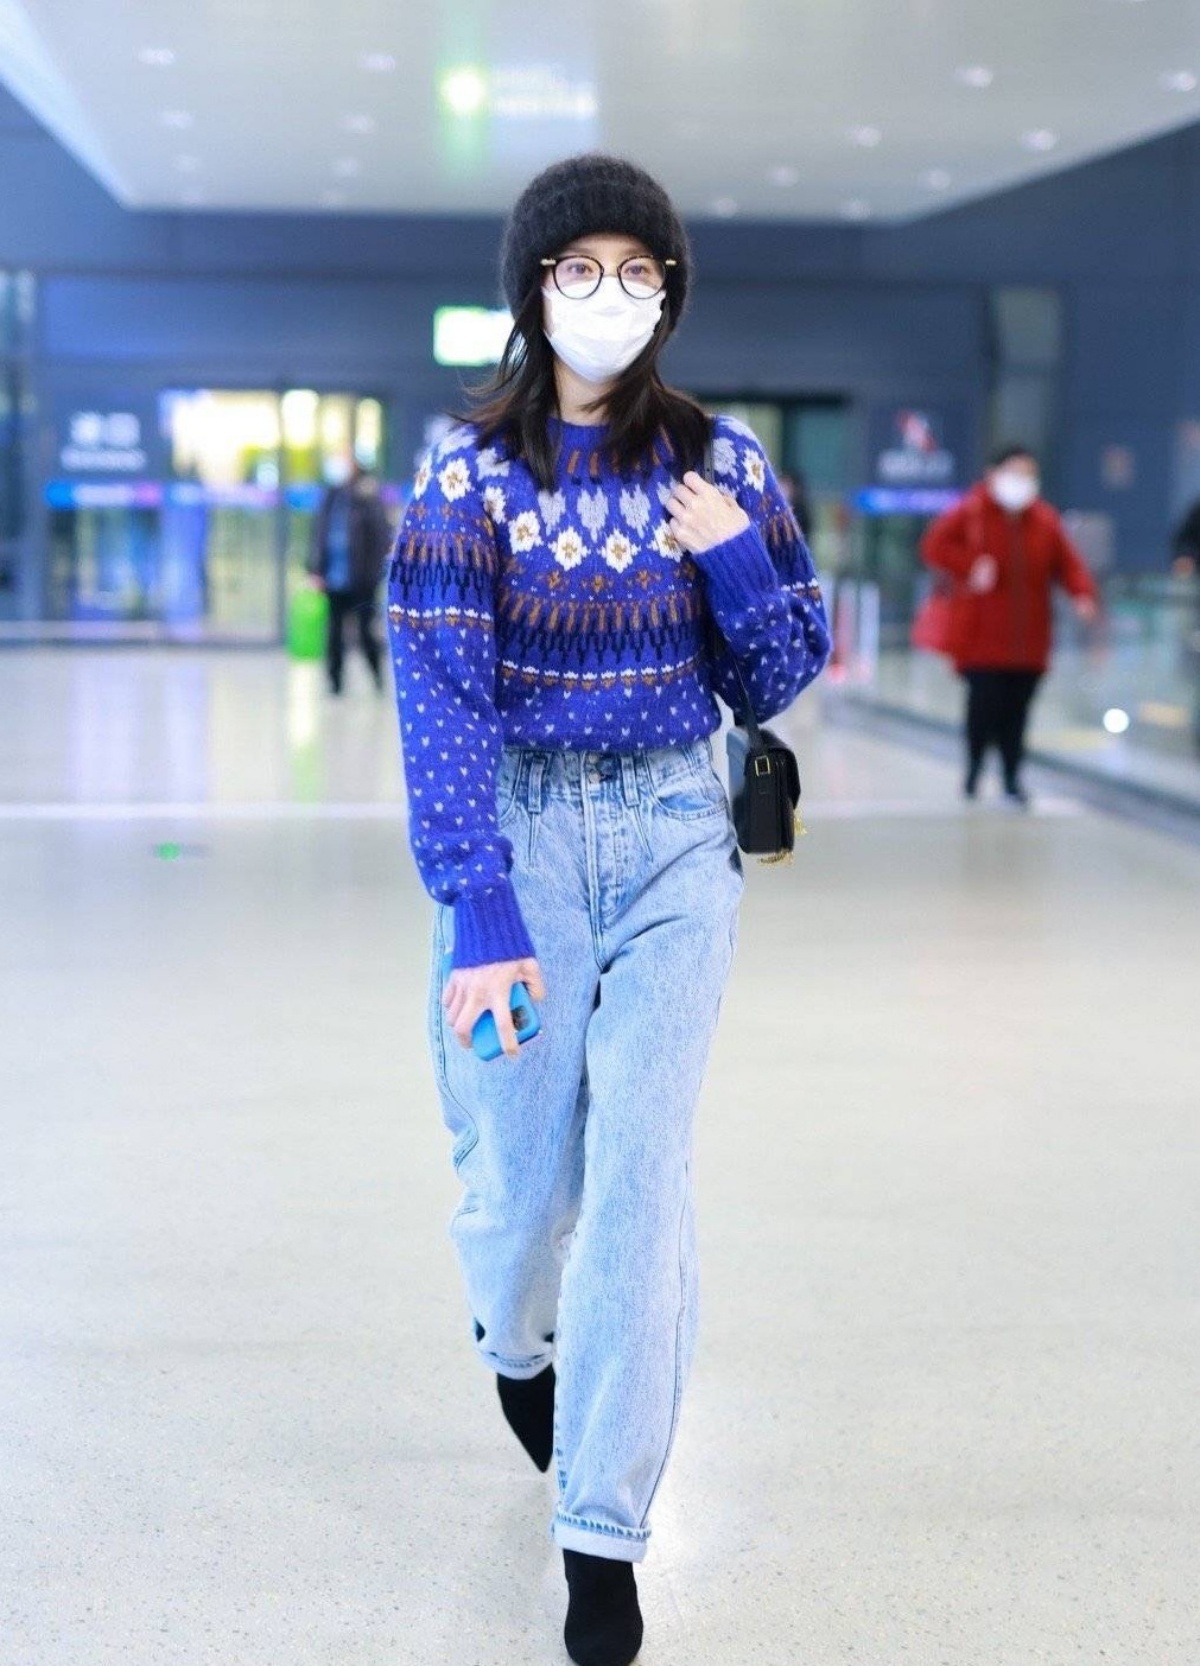 Áo sweater len màu xanh hoạ tiết sơ vin với quần baggy jeans trông mát mắt, cô chọn mũ len, túi xách đến giày đều cùng một màu đen thể hiện sự tinh tế trong tư duy thời trang.